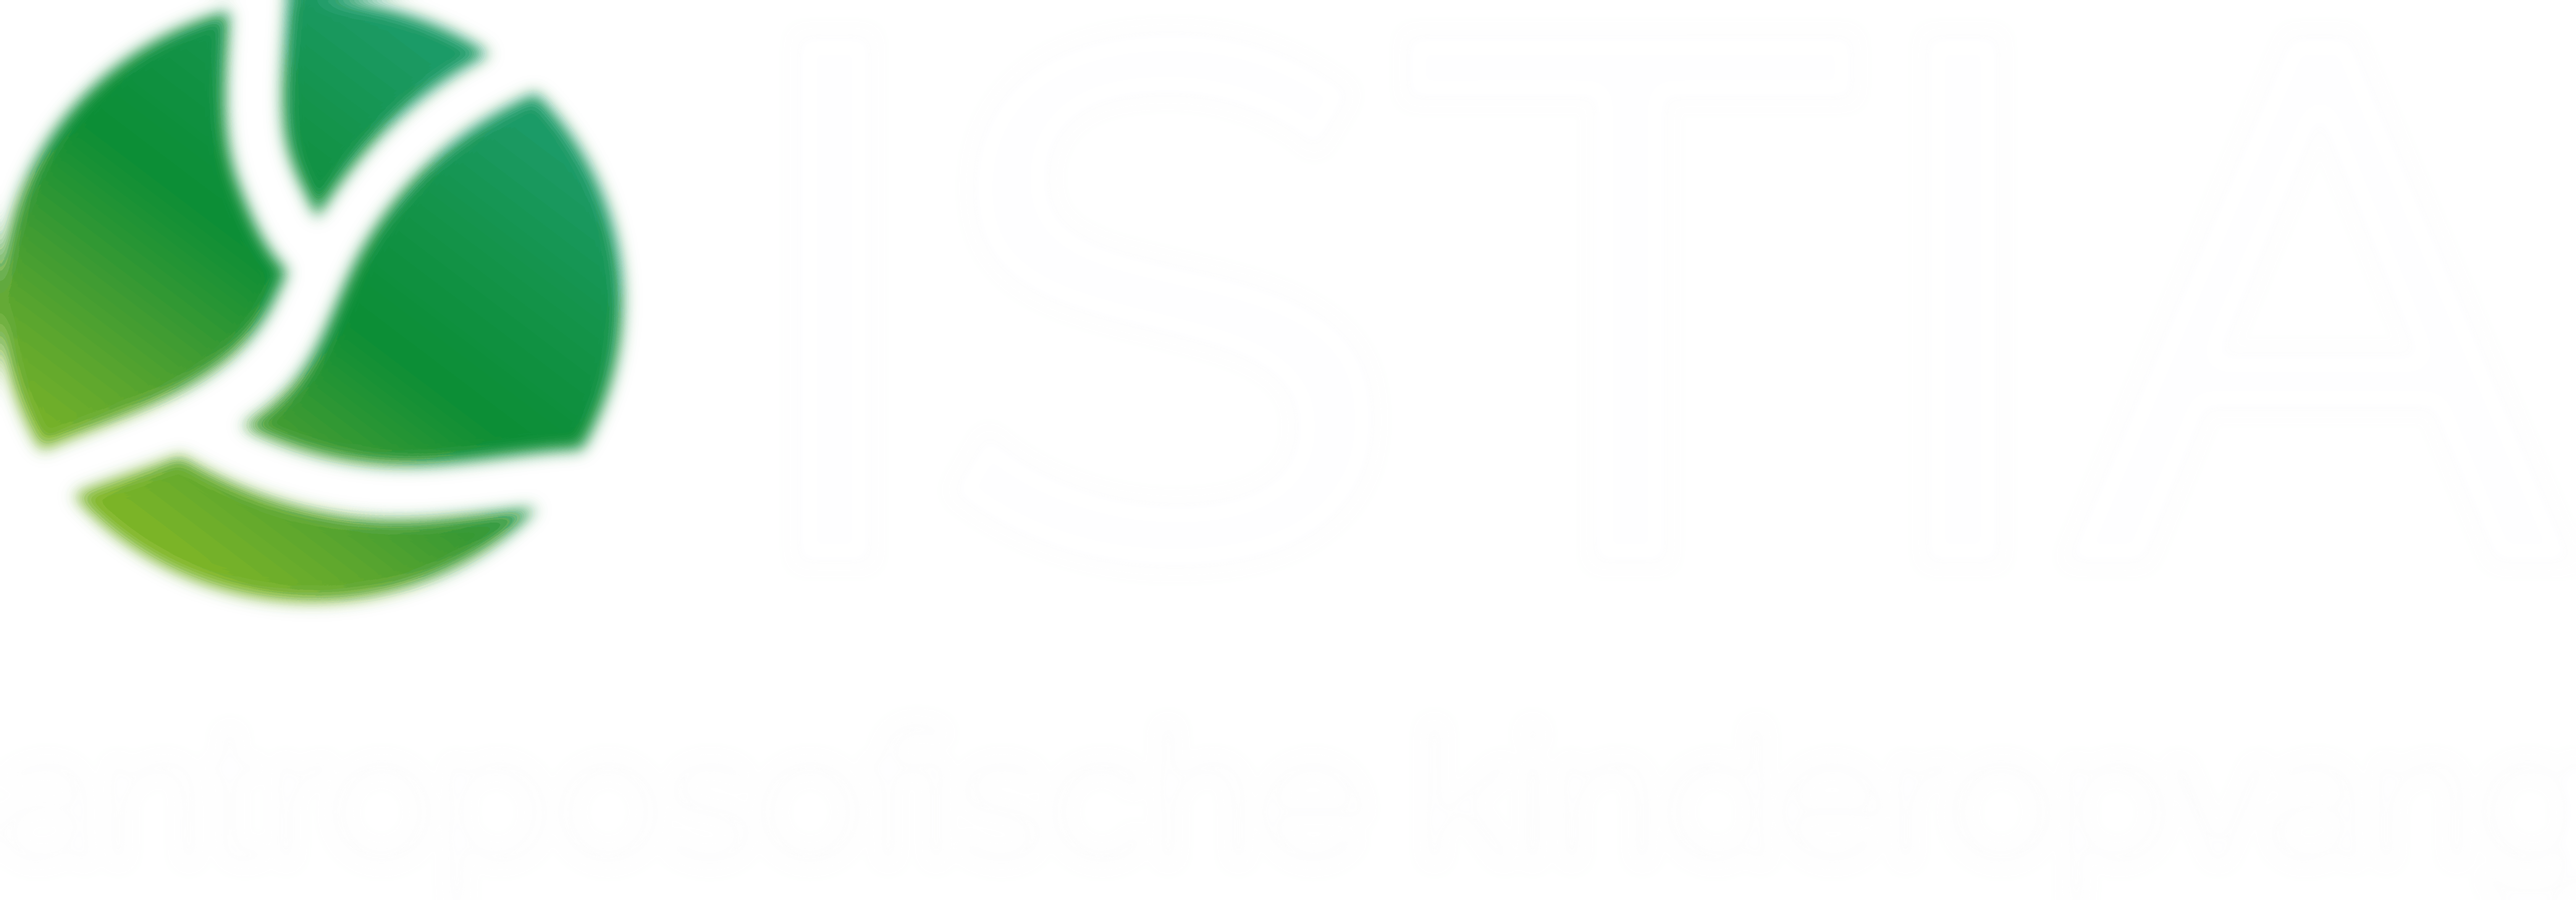 Fietshulp en extra hulp voor Buiten-BSO Istia-Wageningen